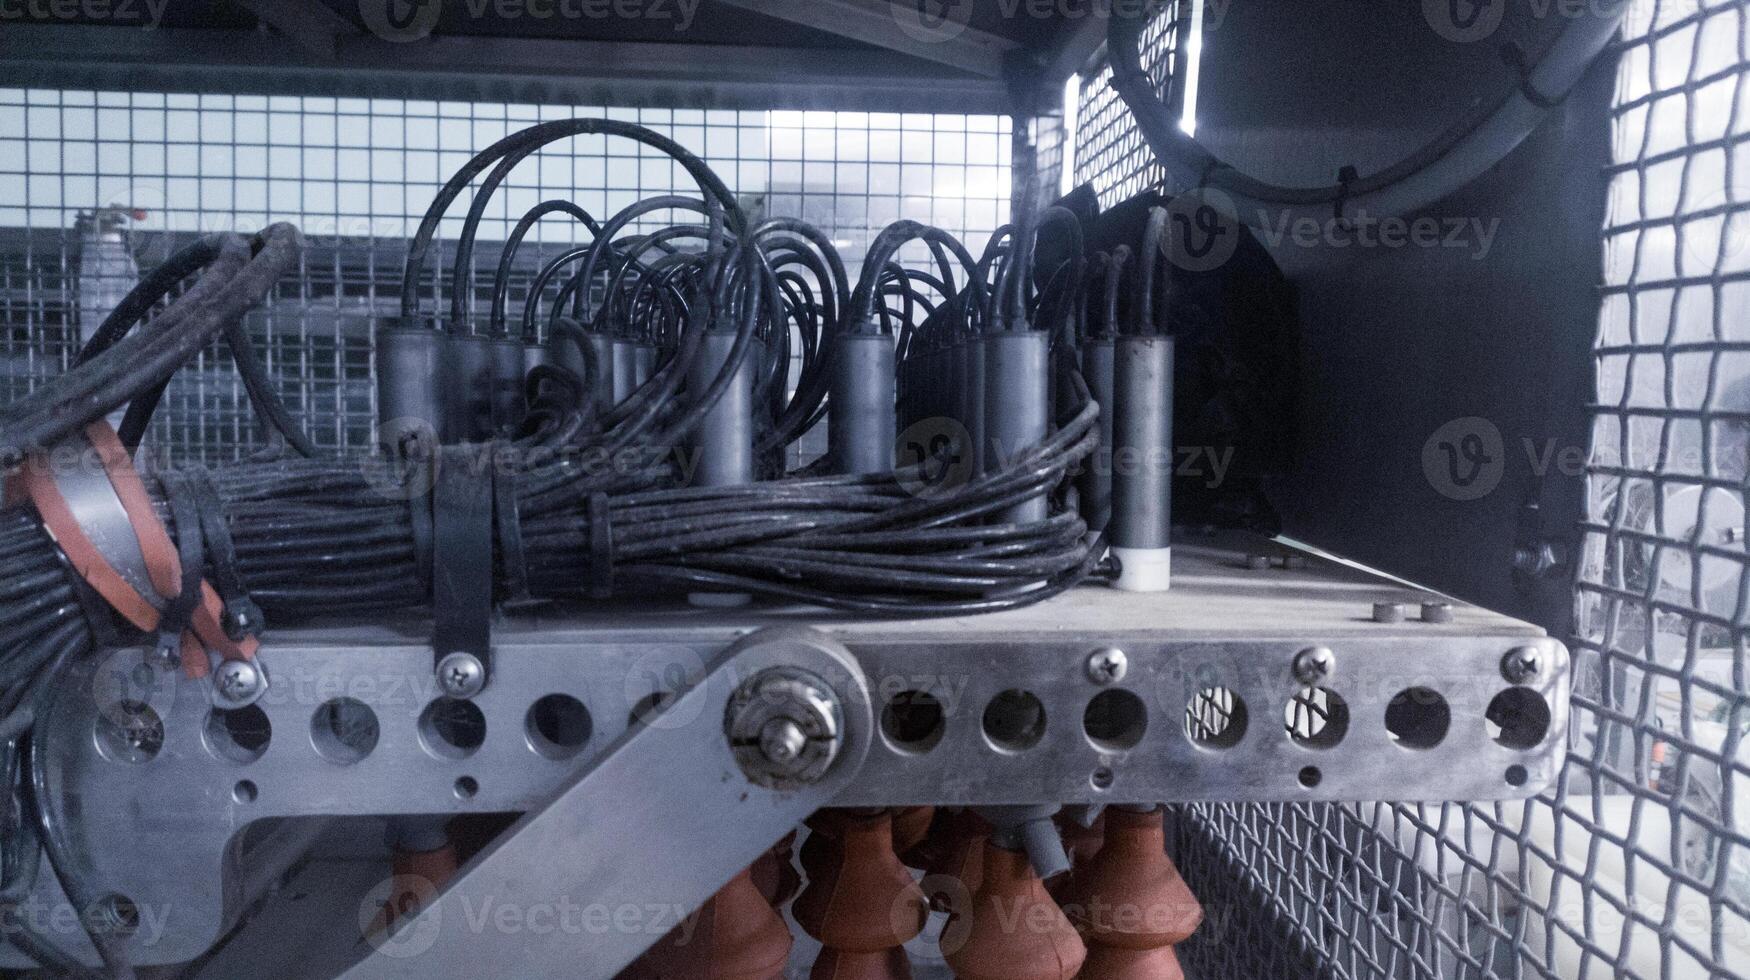 solenoide neumático sistema en el automático huevos control por la luz maquina.criadero tecnología. foto